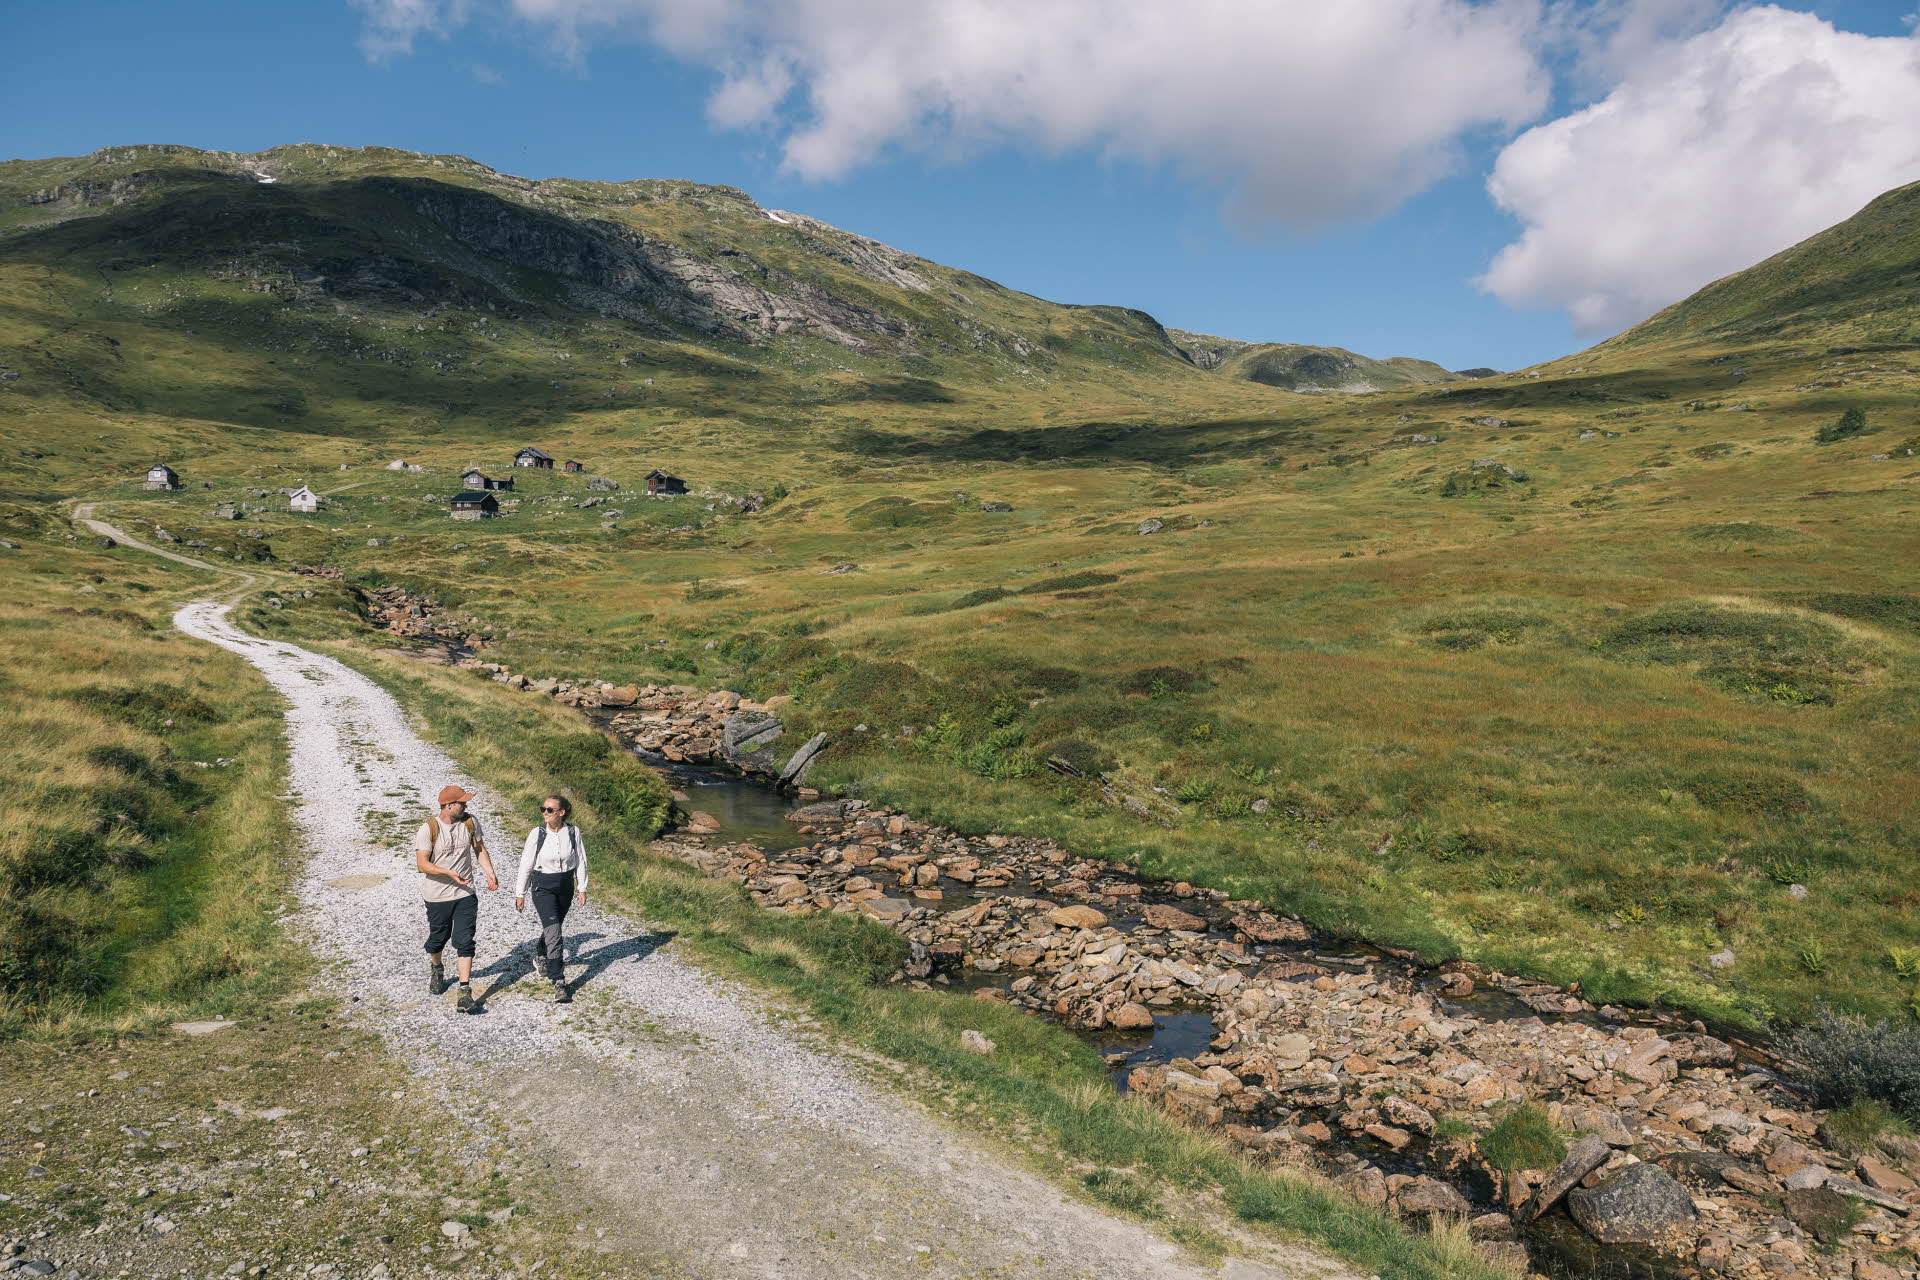 Drei Kinder springen einen Felsen am Berg in Myrkdalen hinunter